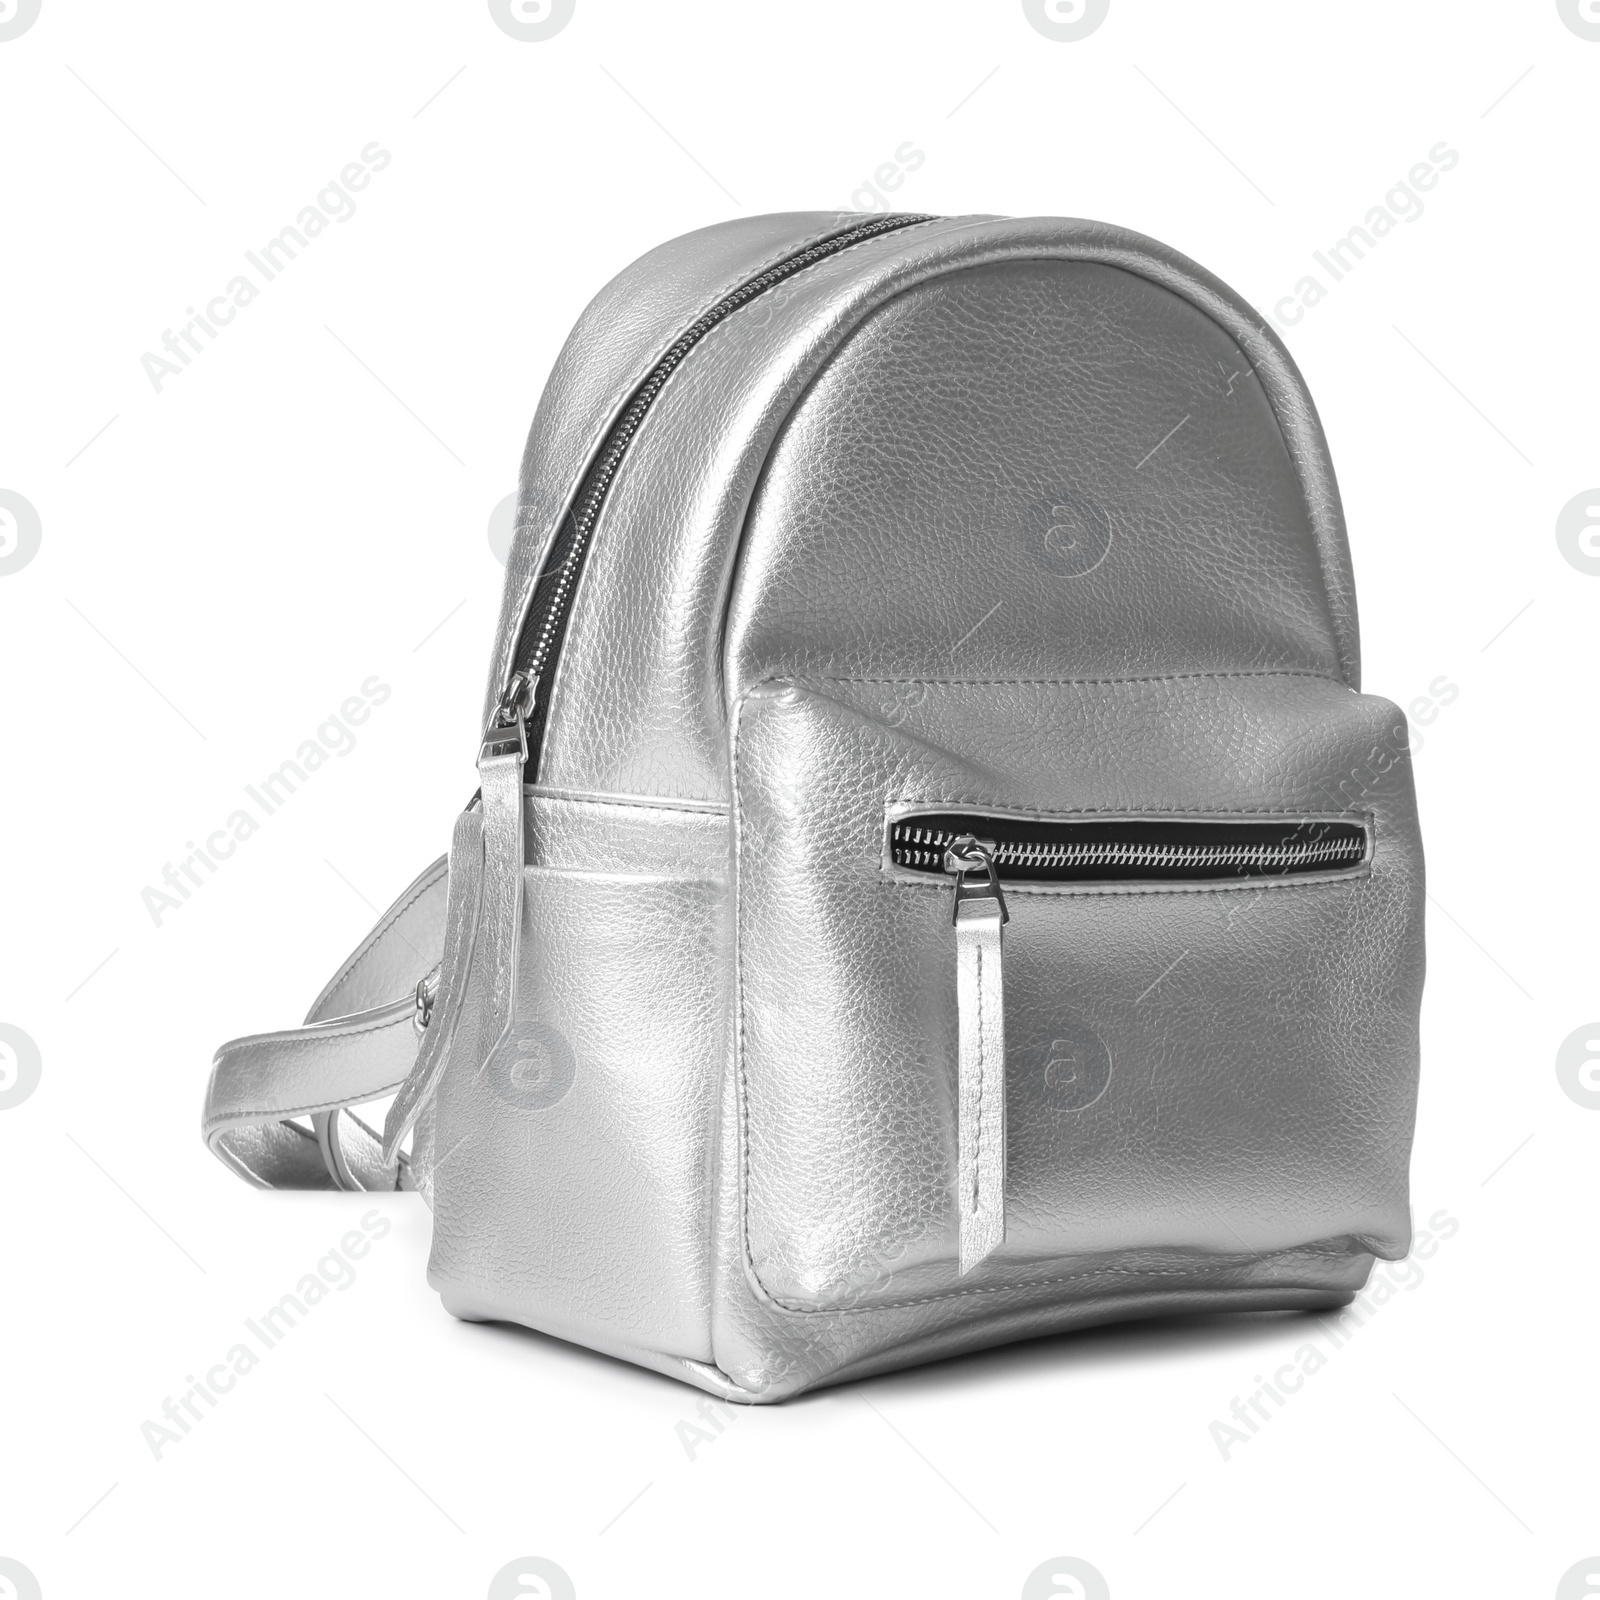 Photo of New stylish modern backpack on white background